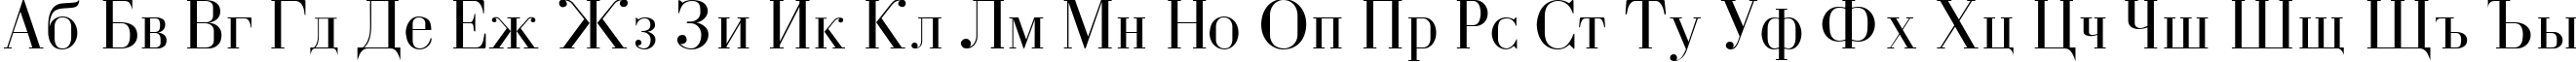 Пример написания английского алфавита шрифтом Czar